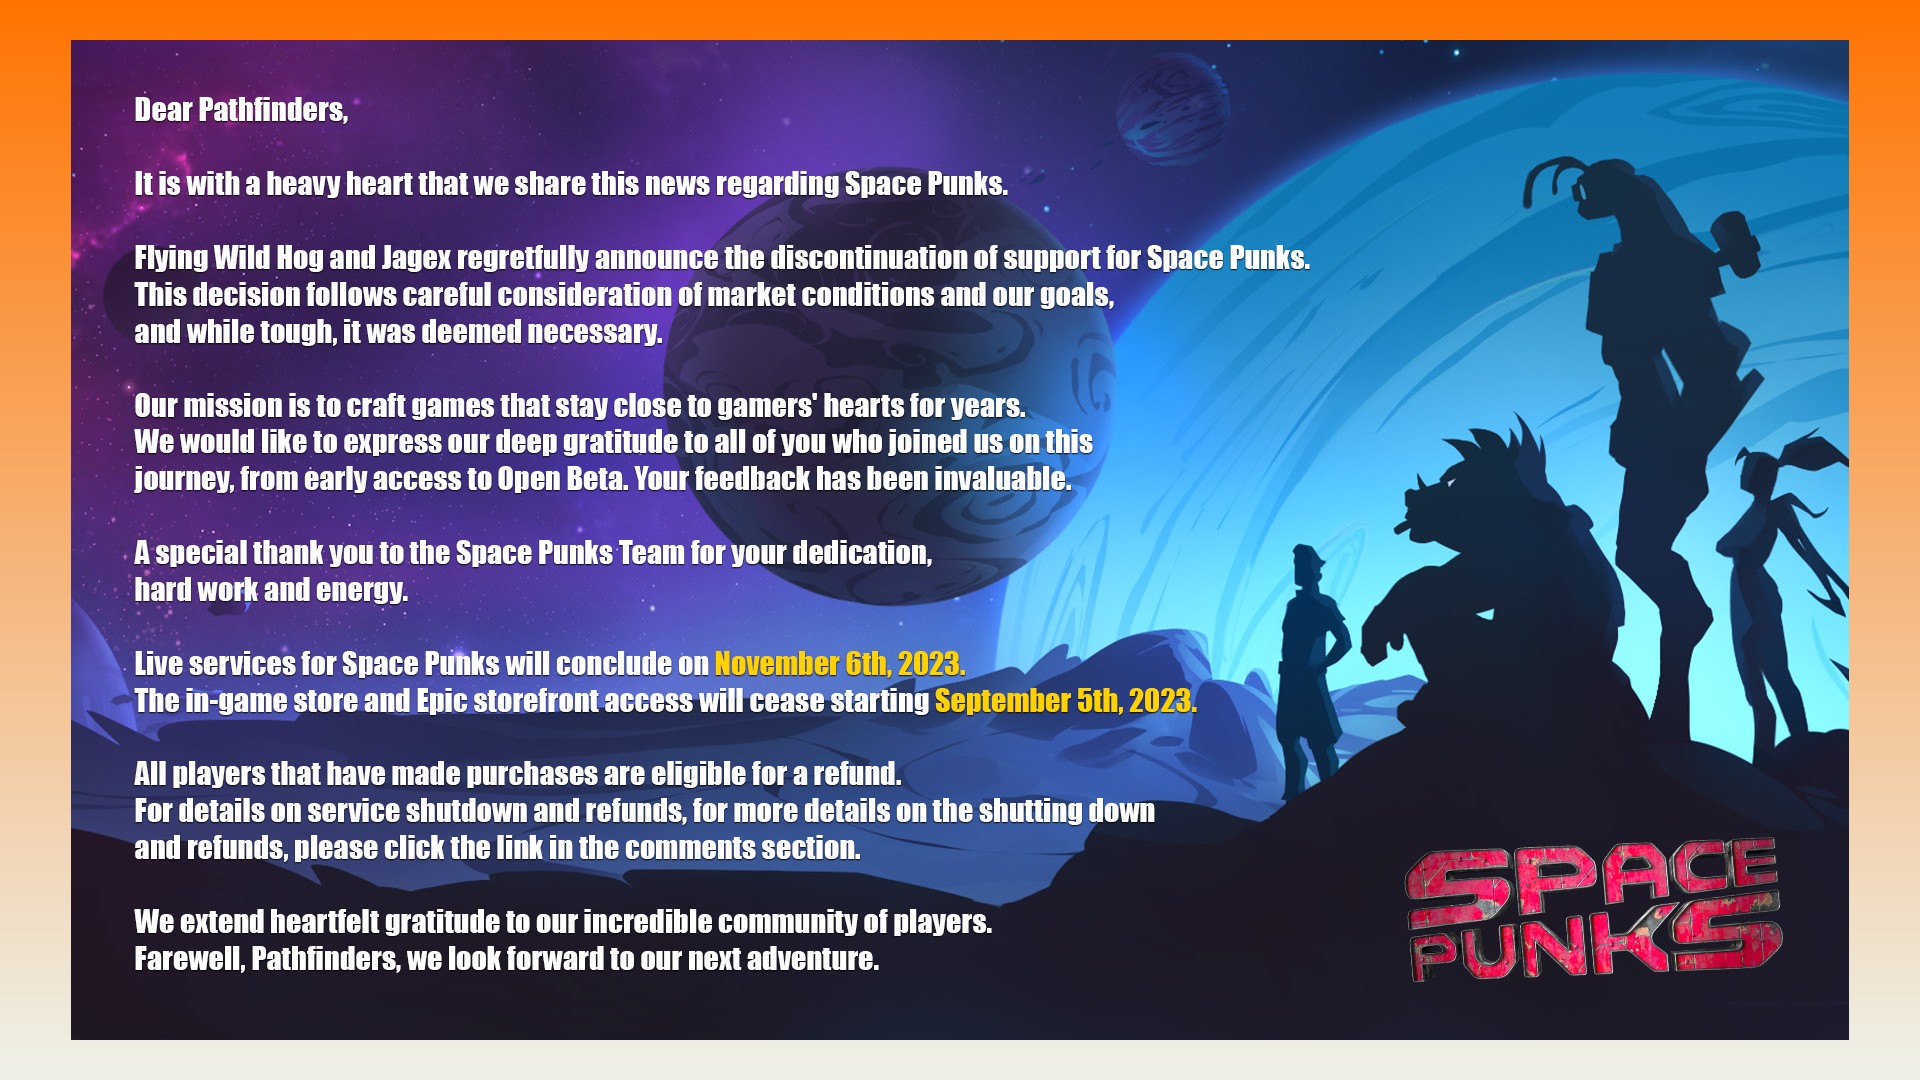 Cierre de Space Punks: una declaración del desarrollador de Runescape, Jagex, que confirma el cierre del juego ARPG de ciencia ficción Space Punks